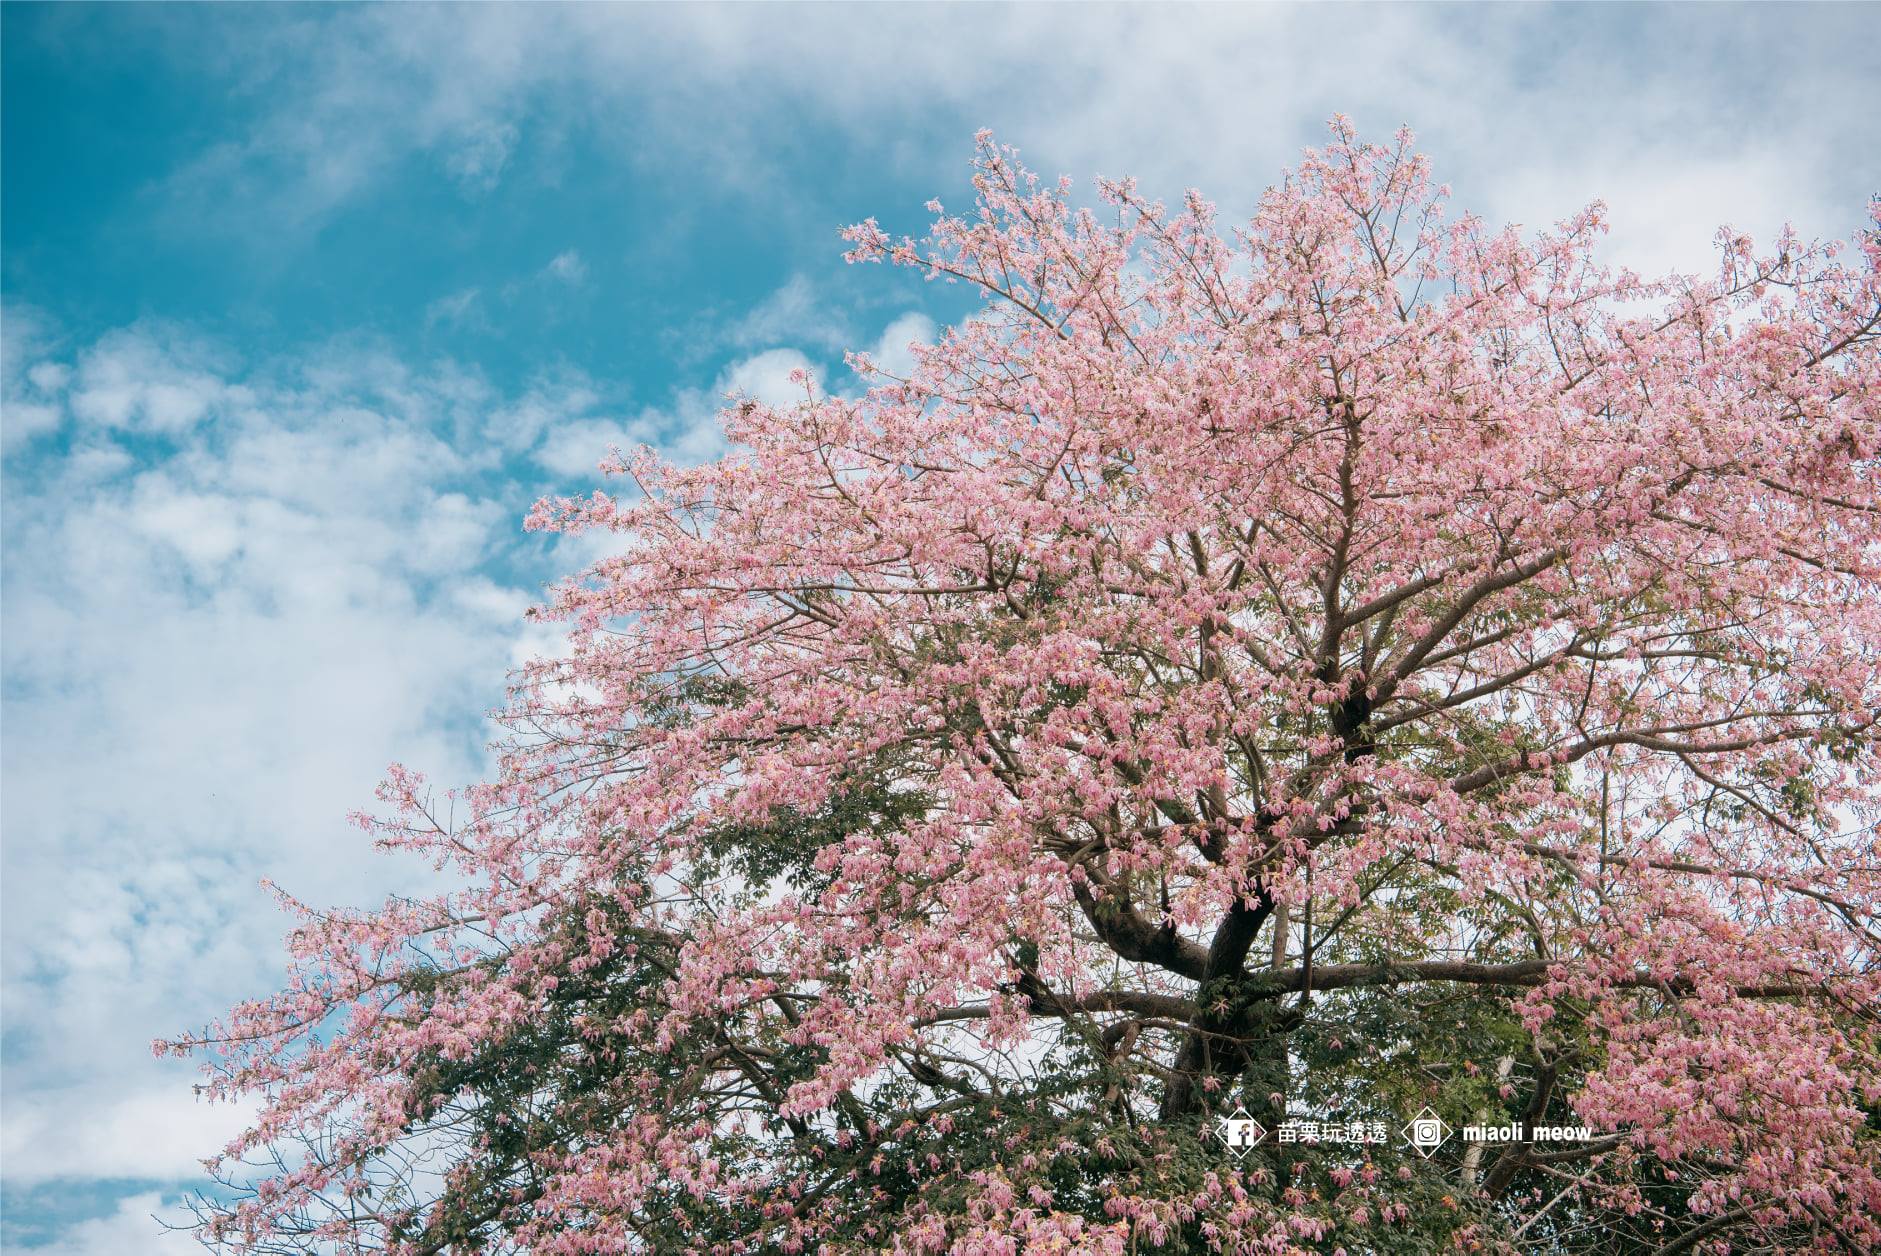 粉色艷麗的花朵掛滿枝頭